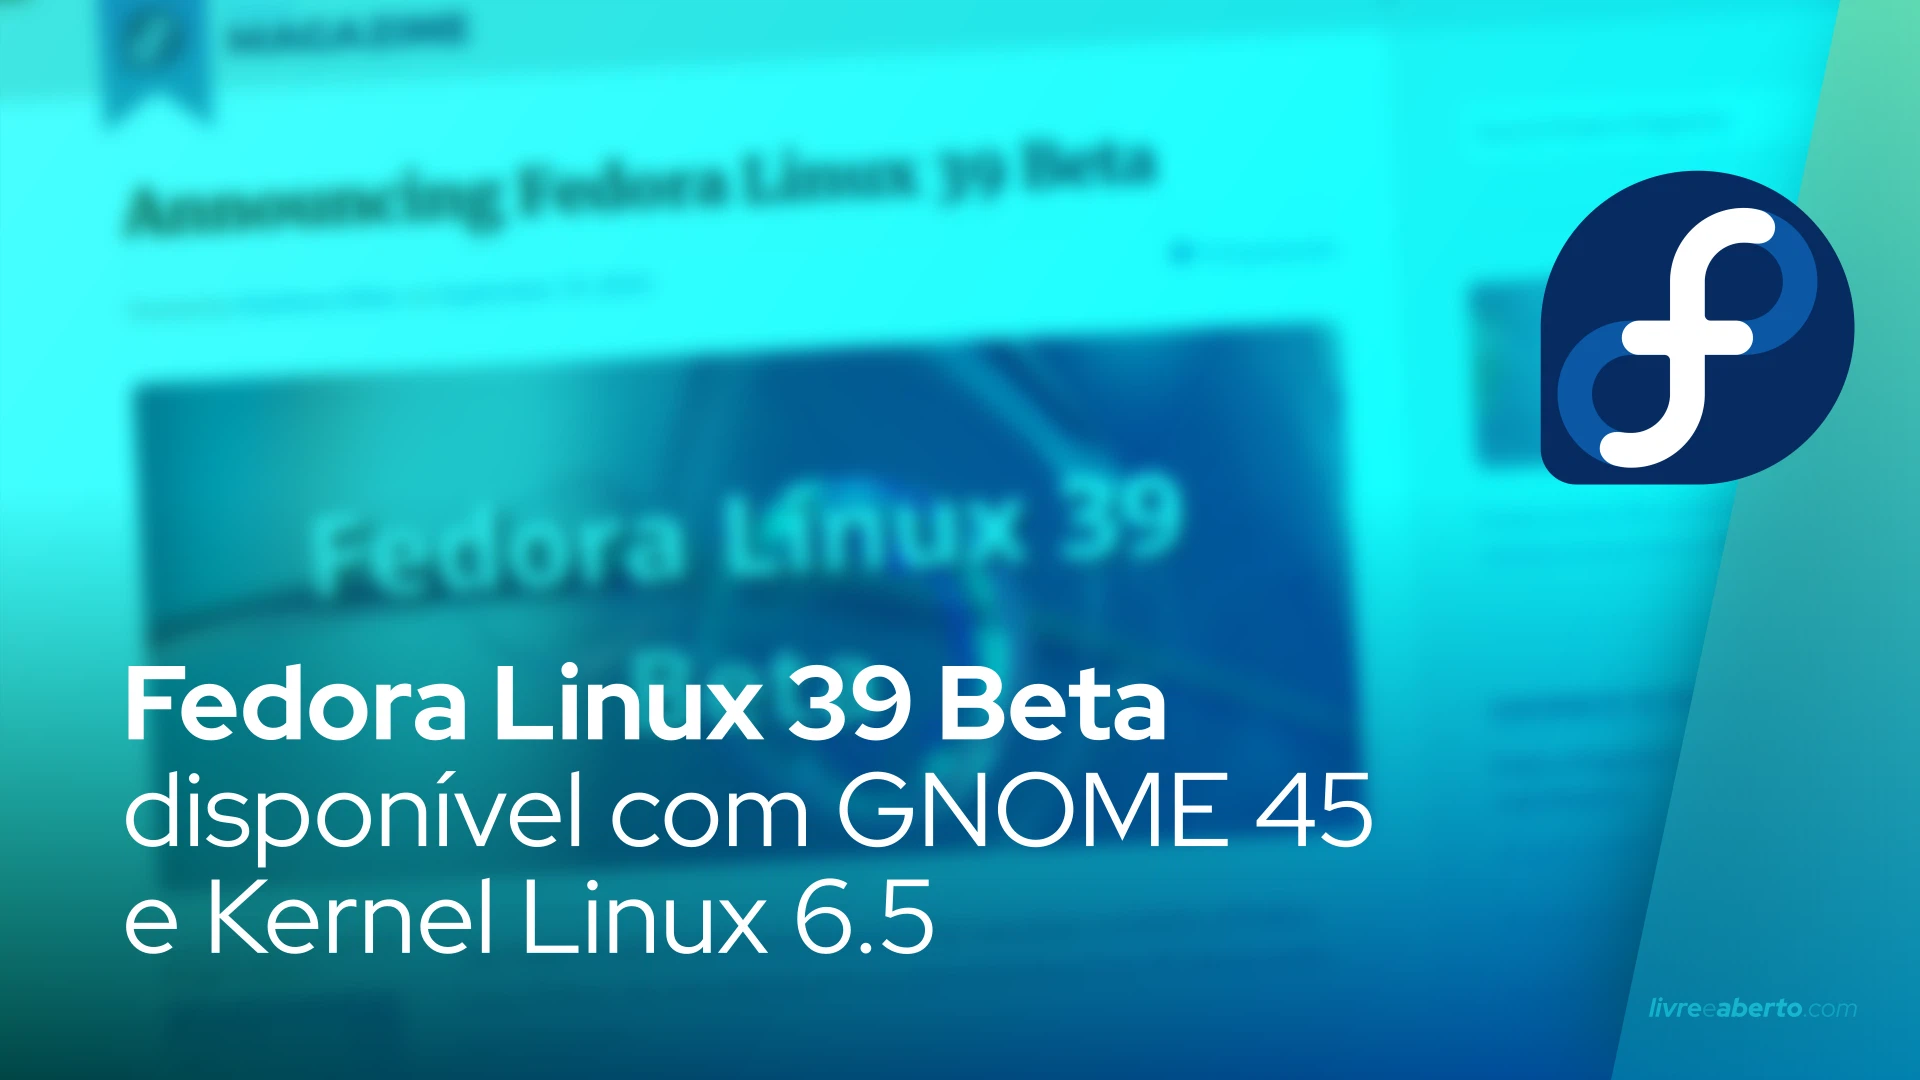 Fedora Linux 39 Beta disponível com GNOME 45 e Kernel Linux 6.5